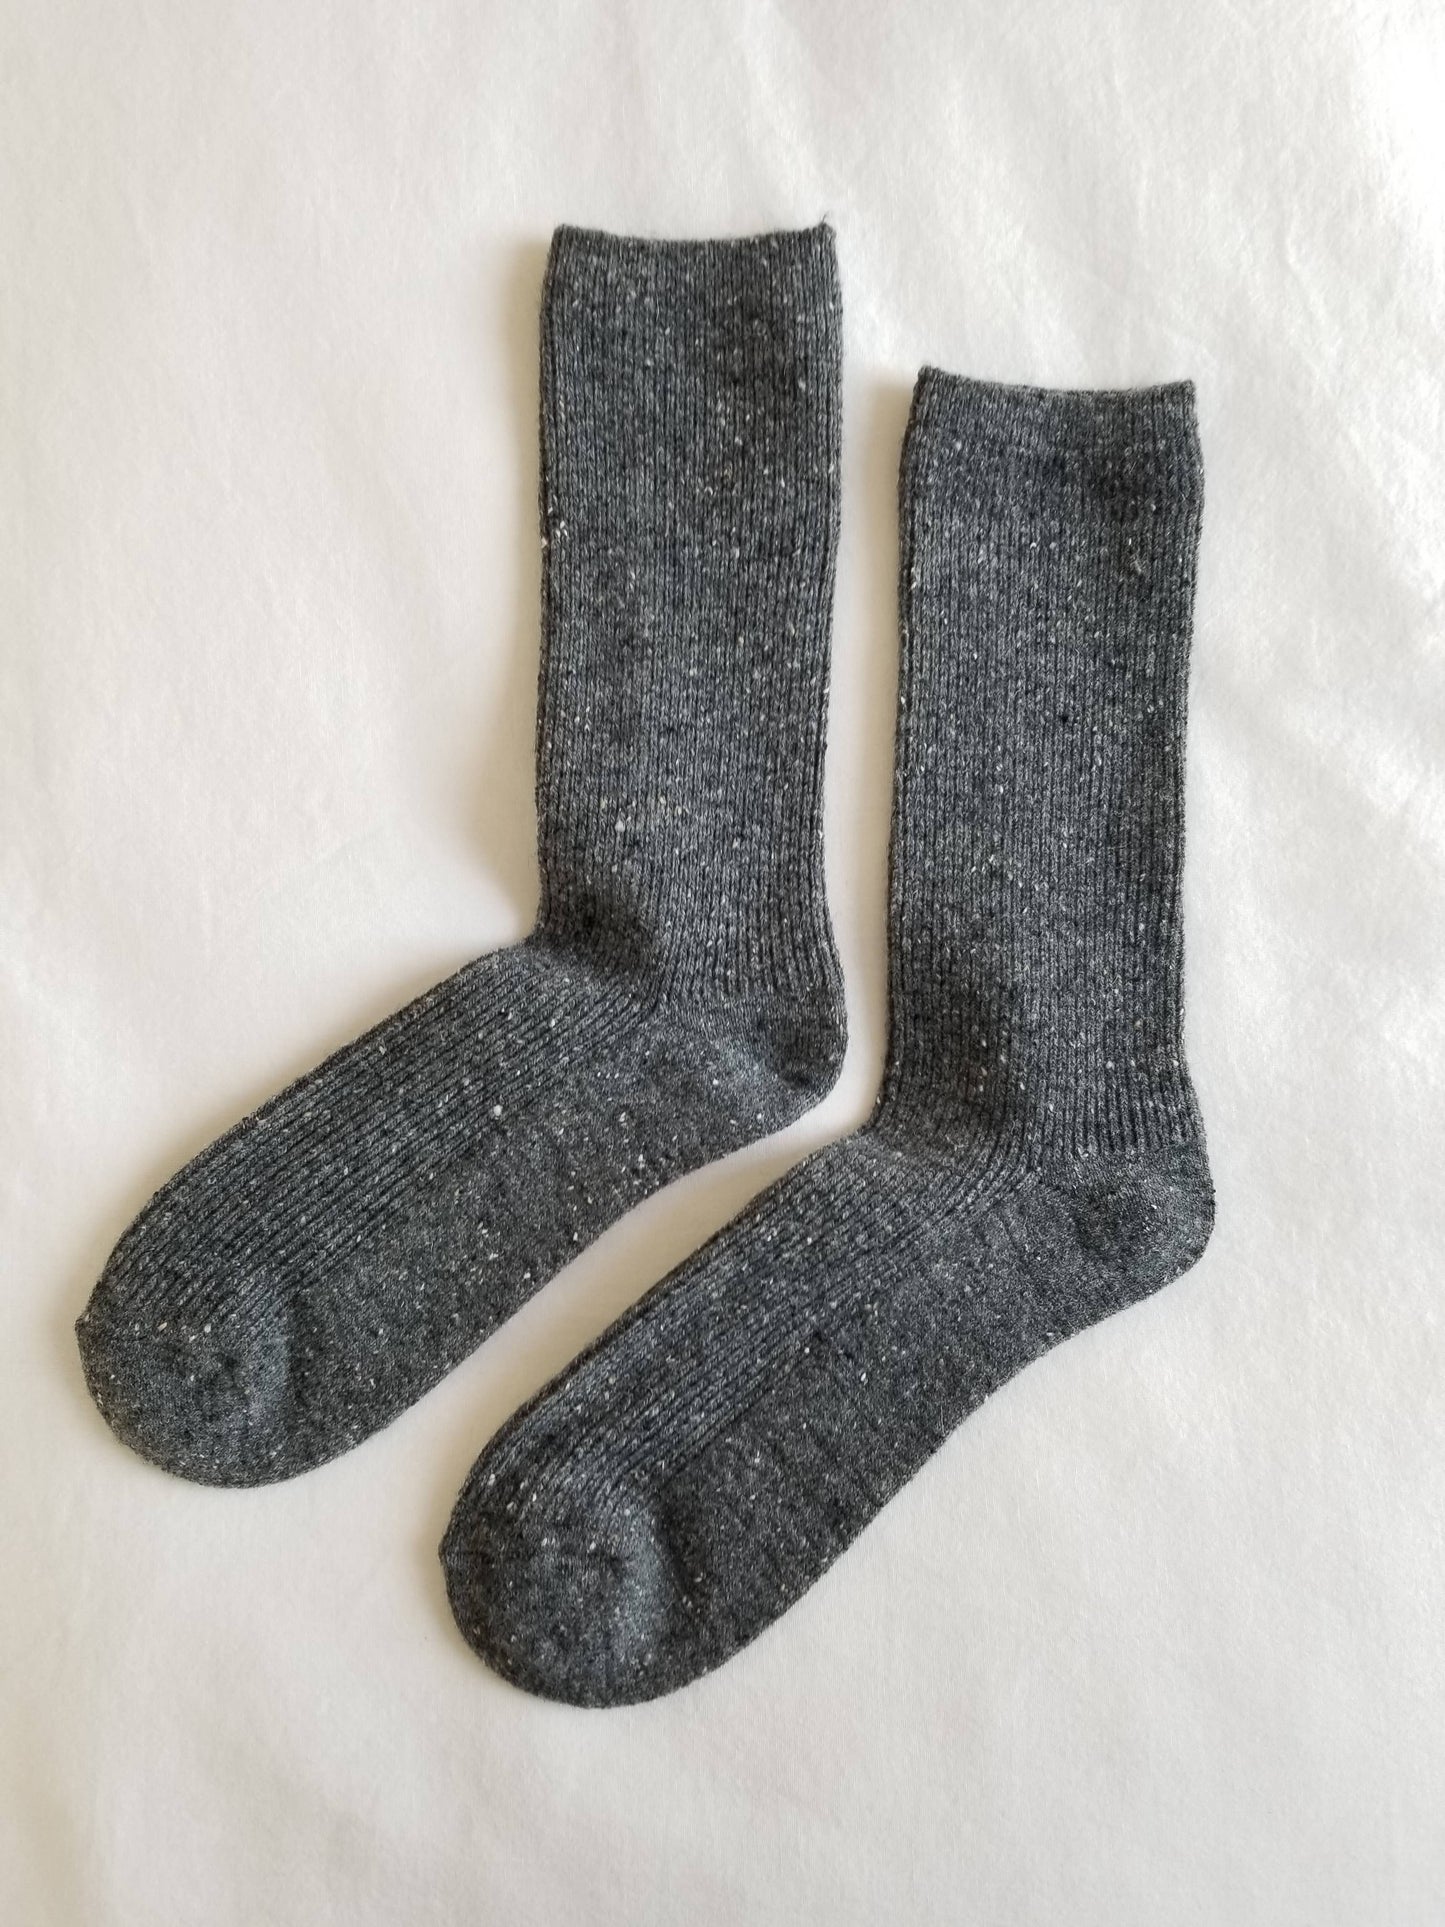 Snow Socks Tan